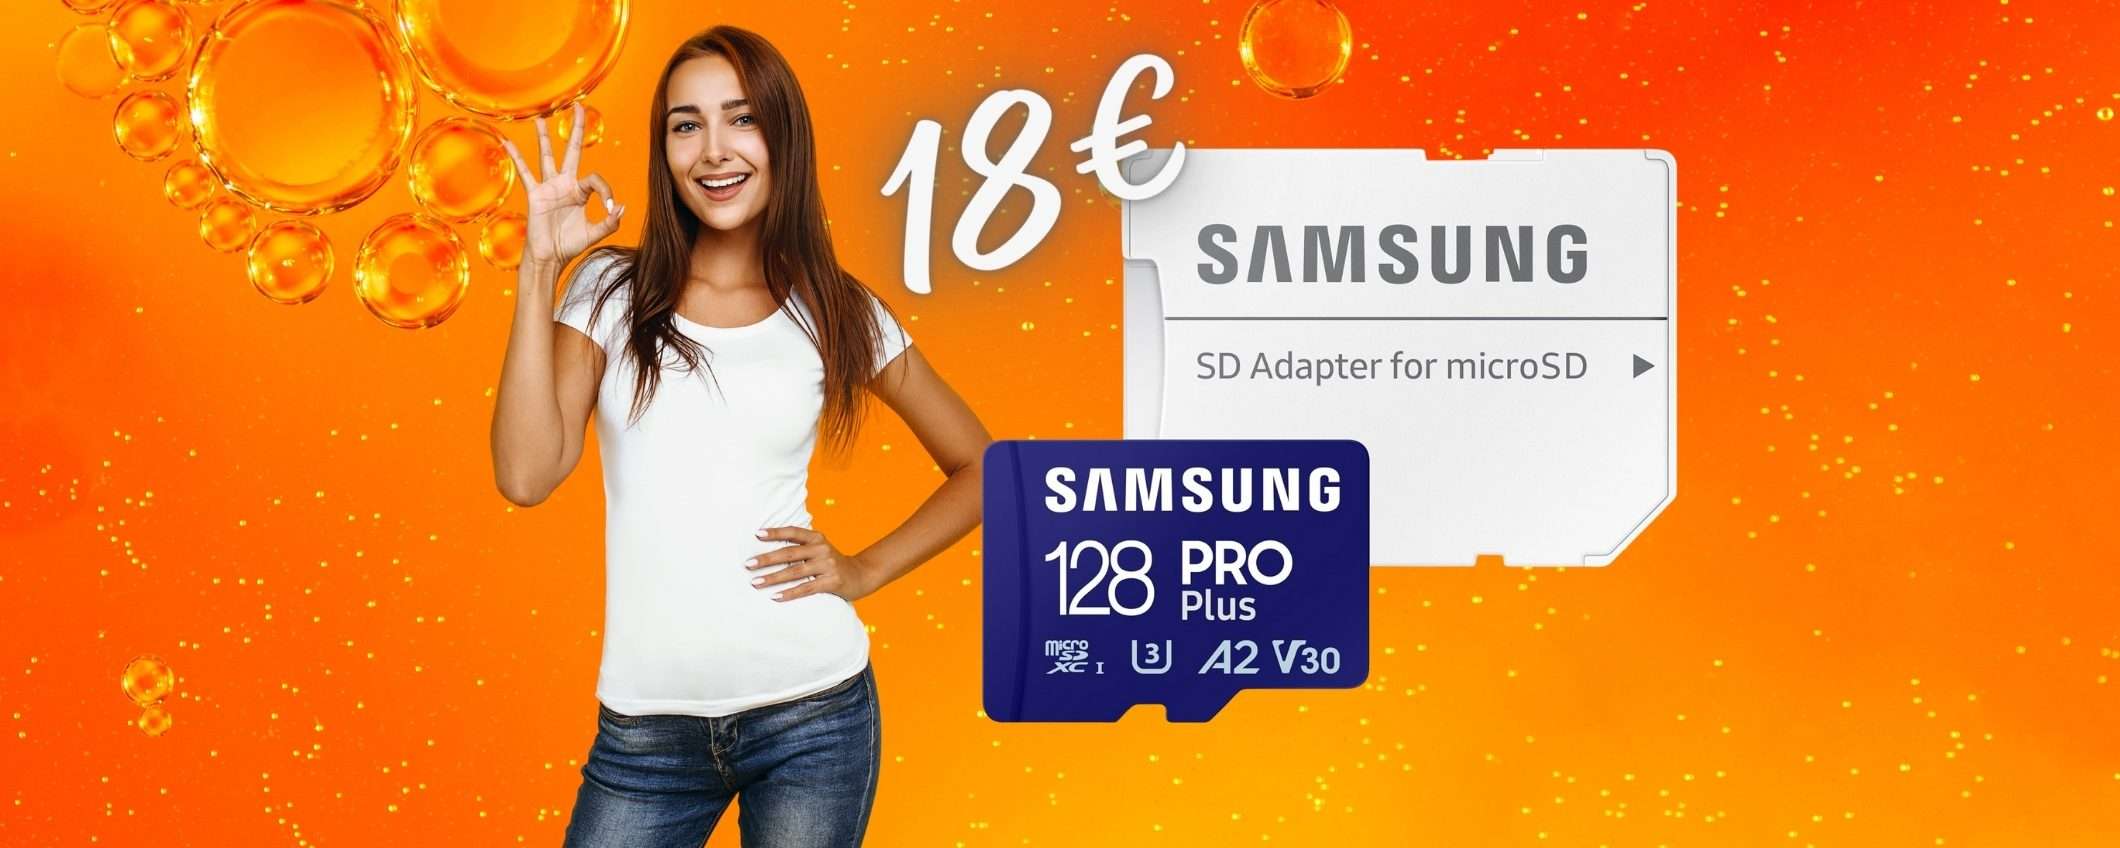 MicroSD Samsung da 128GB a PREZZO BOMBA Amazon, solo 18€